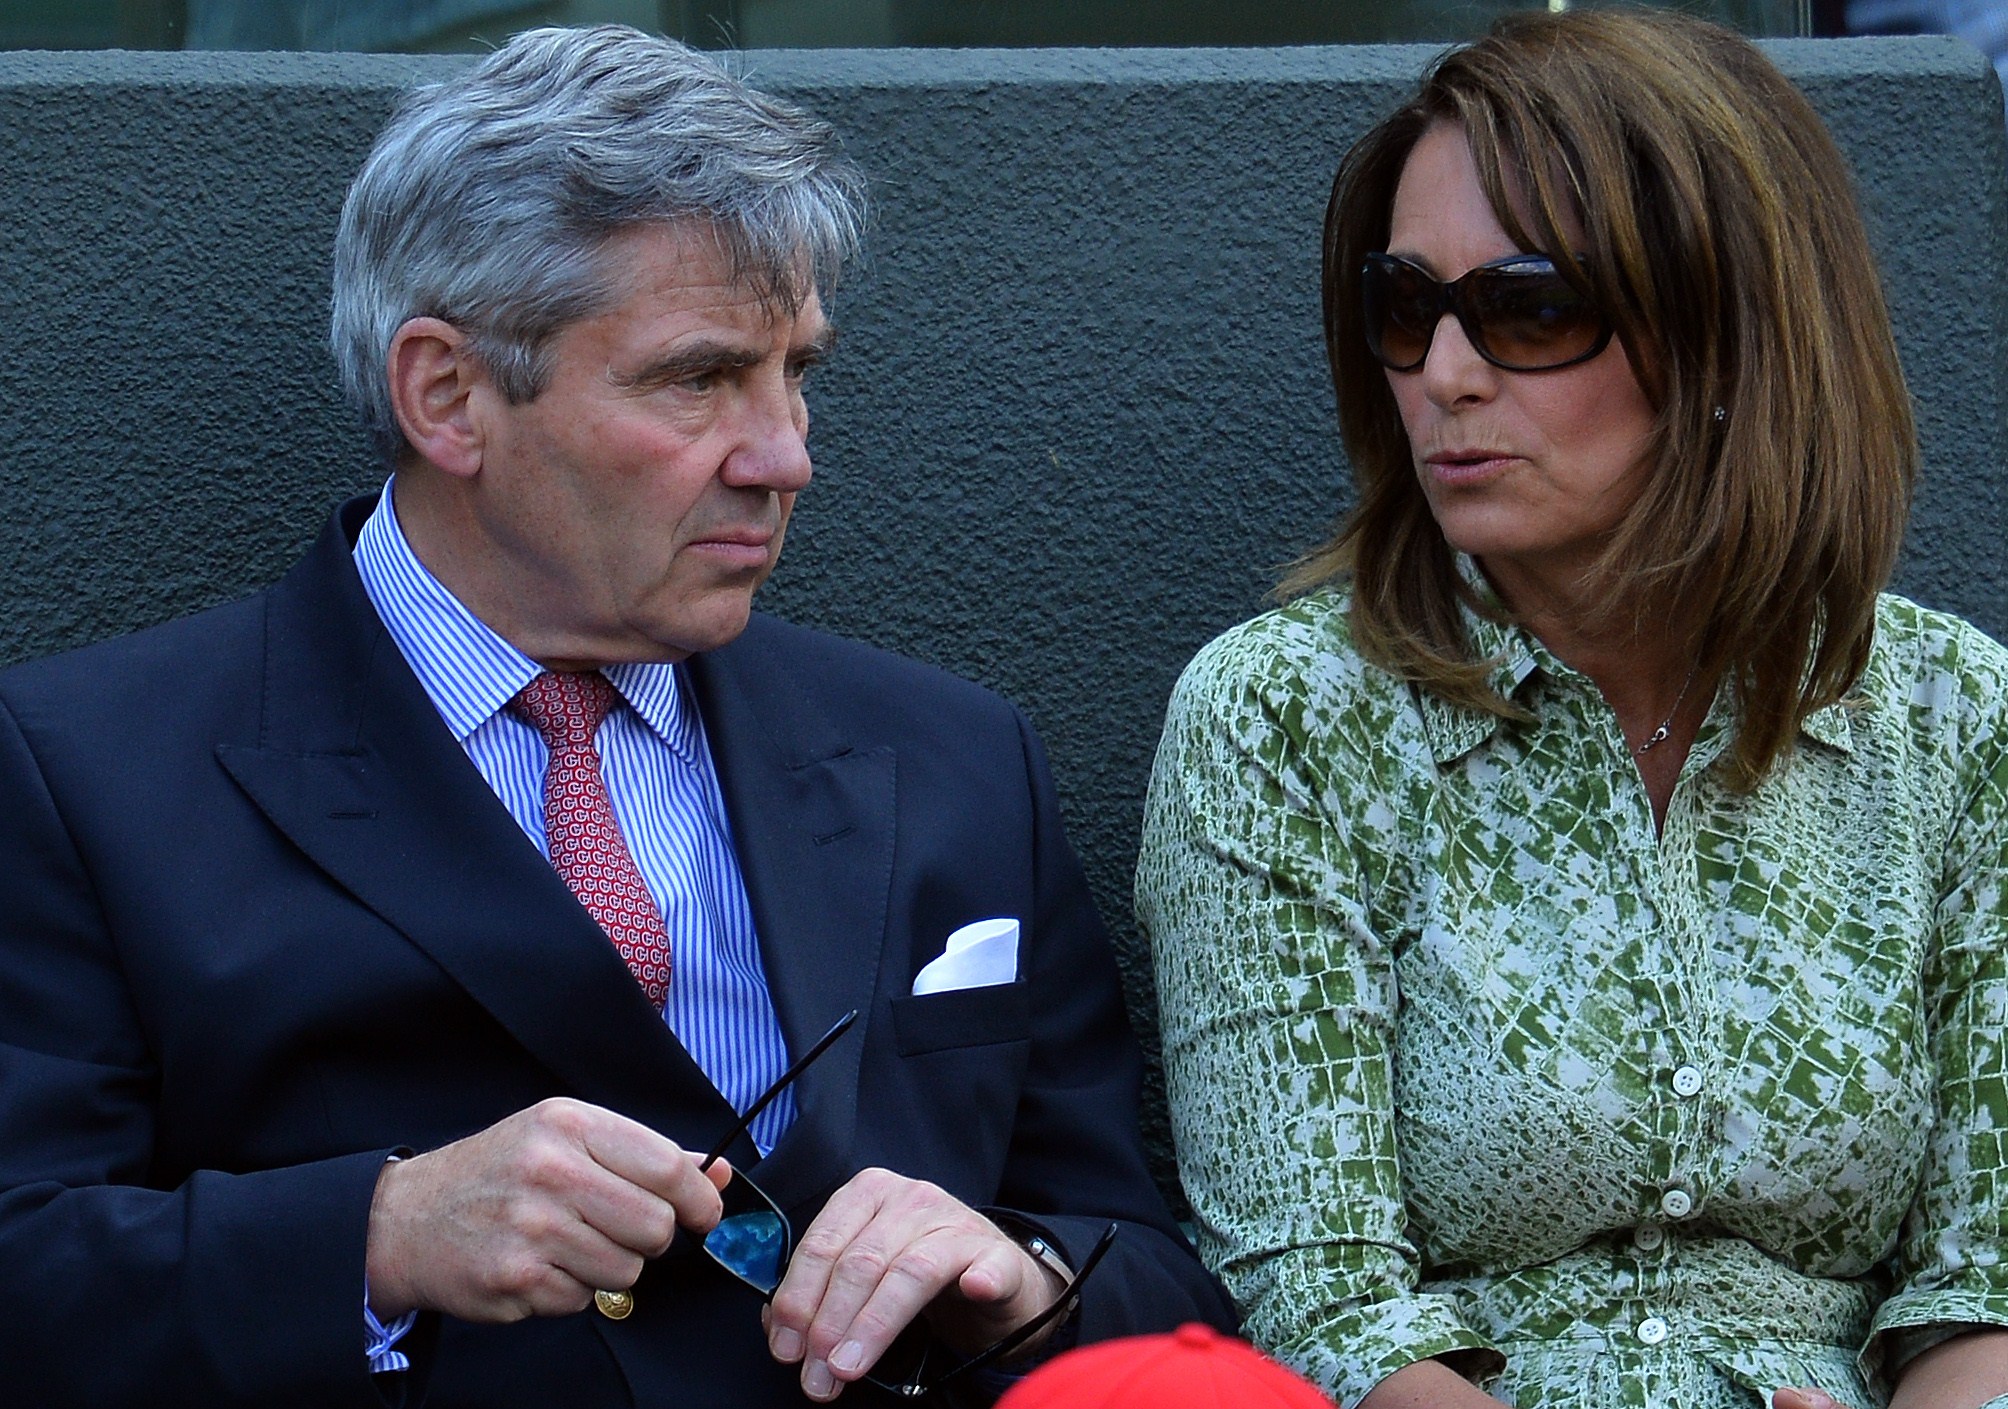 Michael Middleton et Carole Middleton lors des championnats de Wimbledon à Londres en 2015 | Source : Getty Images